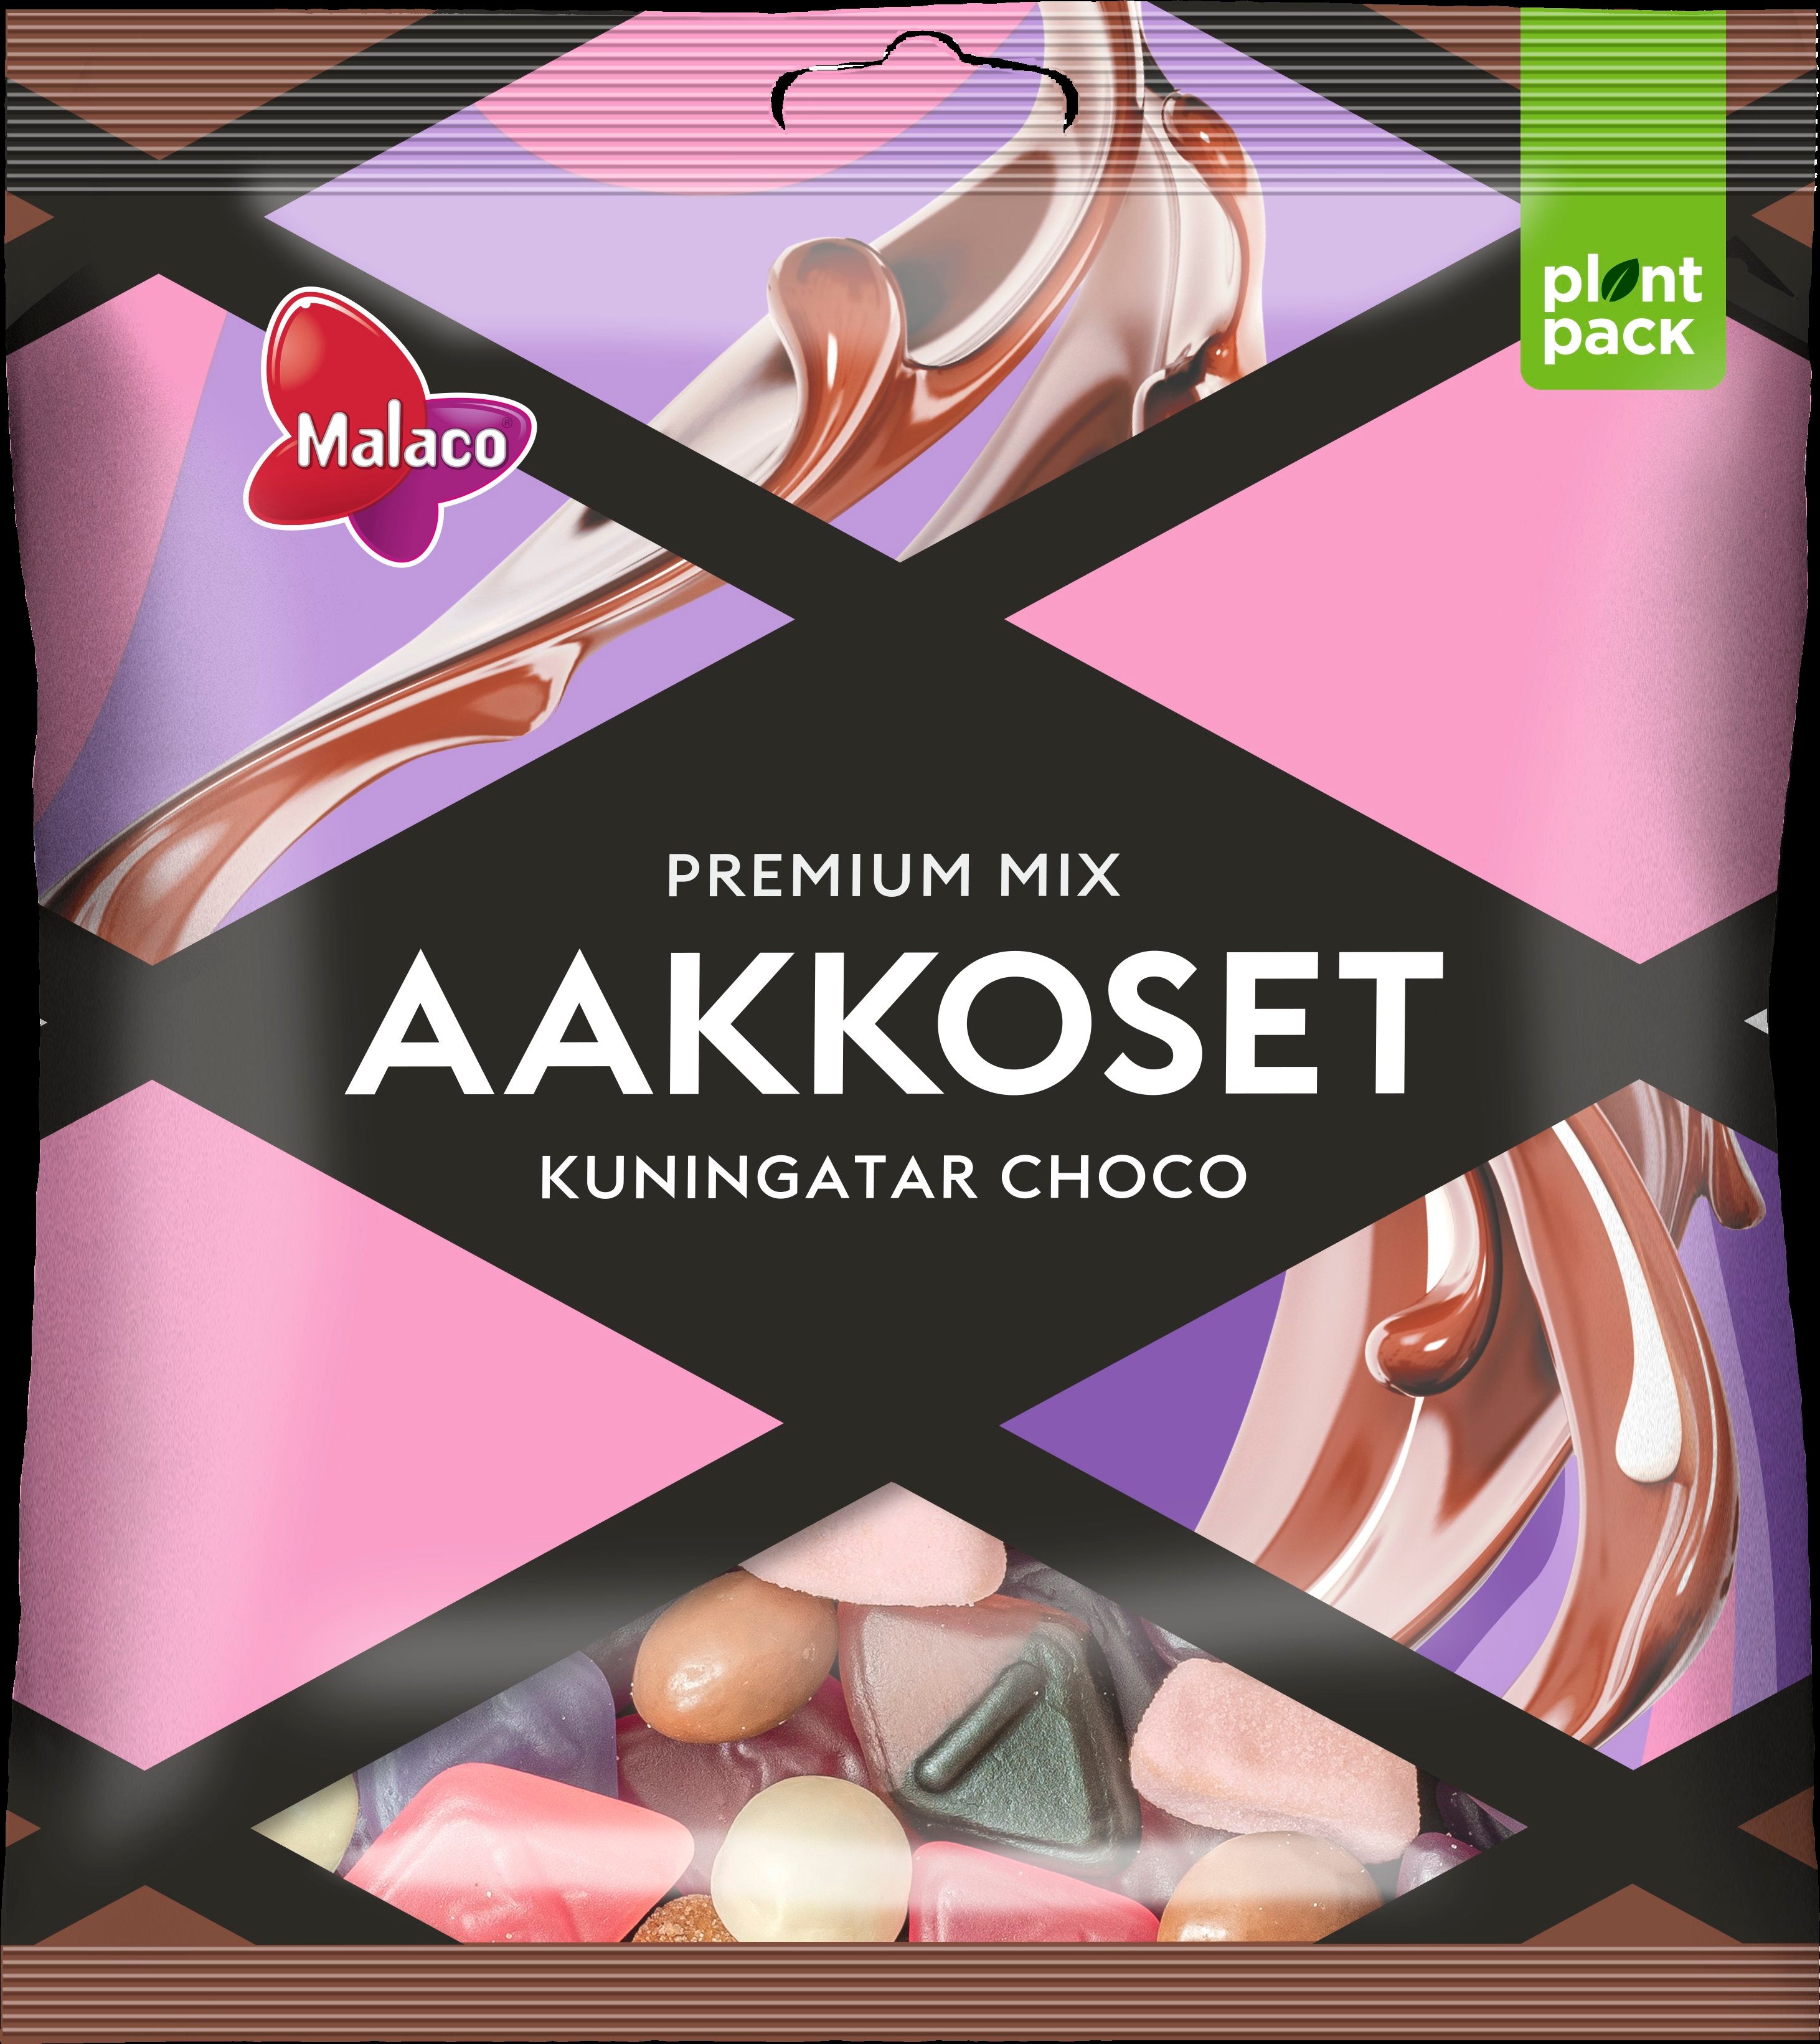 Malaco Aakkoset Kuningatar Choco confectionery mix 280g – 